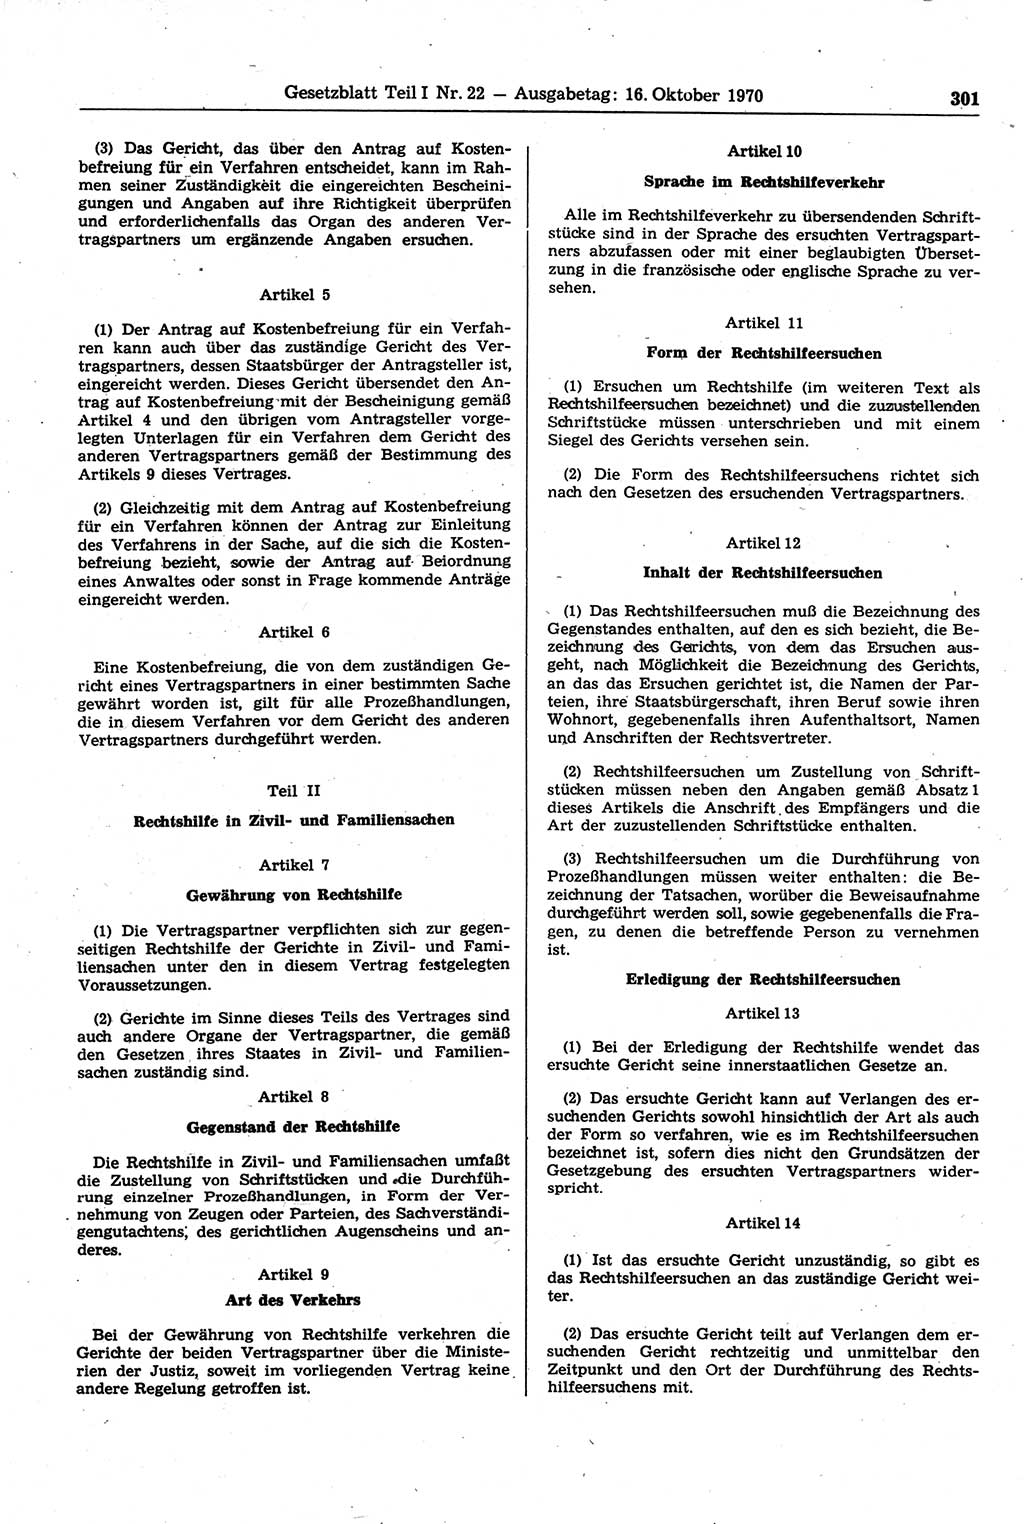 Gesetzblatt (GBl.) der Deutschen Demokratischen Republik (DDR) Teil Ⅰ 1970, Seite 301 (GBl. DDR Ⅰ 1970, S. 301)